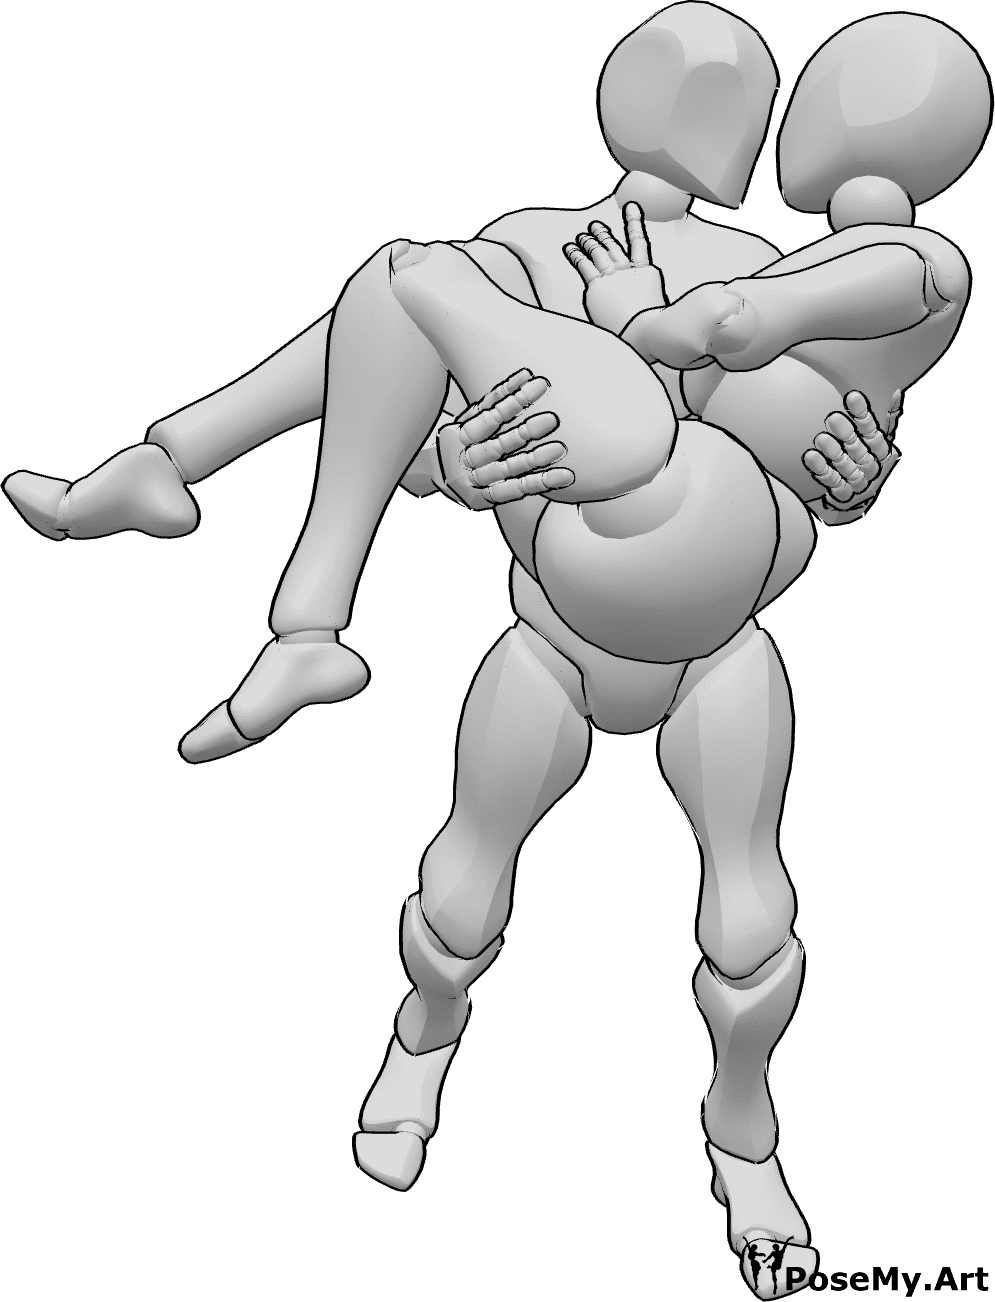 Referencia de poses- El hombre adopta una pose femenina - Hombre lleva a mujer y la besa pose